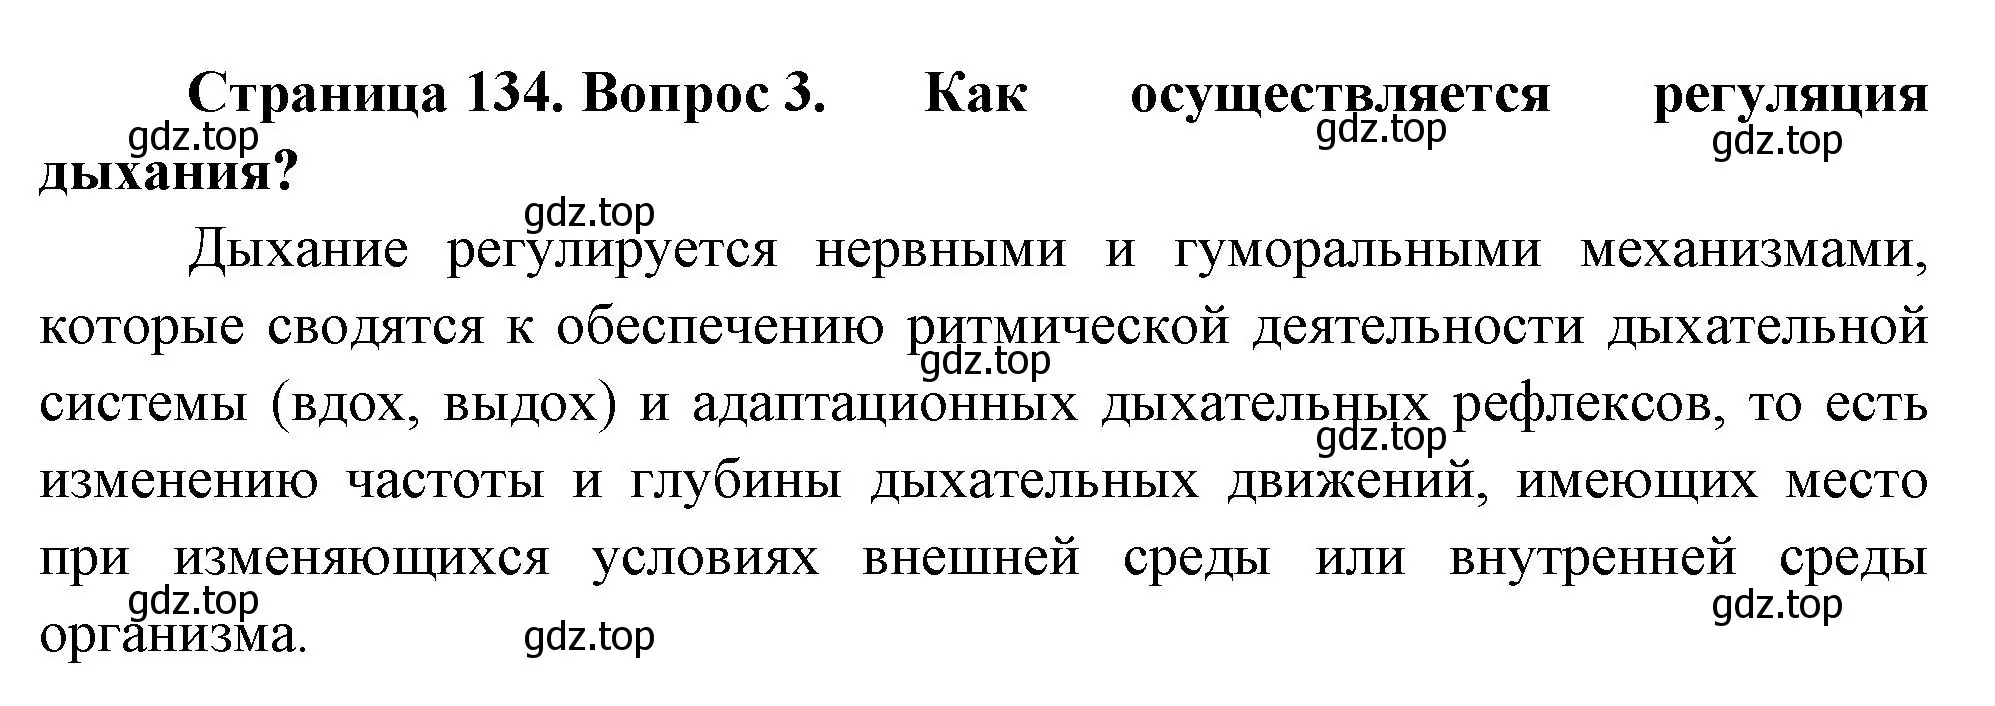 Решение номер 3 (страница 134) гдз по биологии 9 класс Пасечник, Каменский, учебник